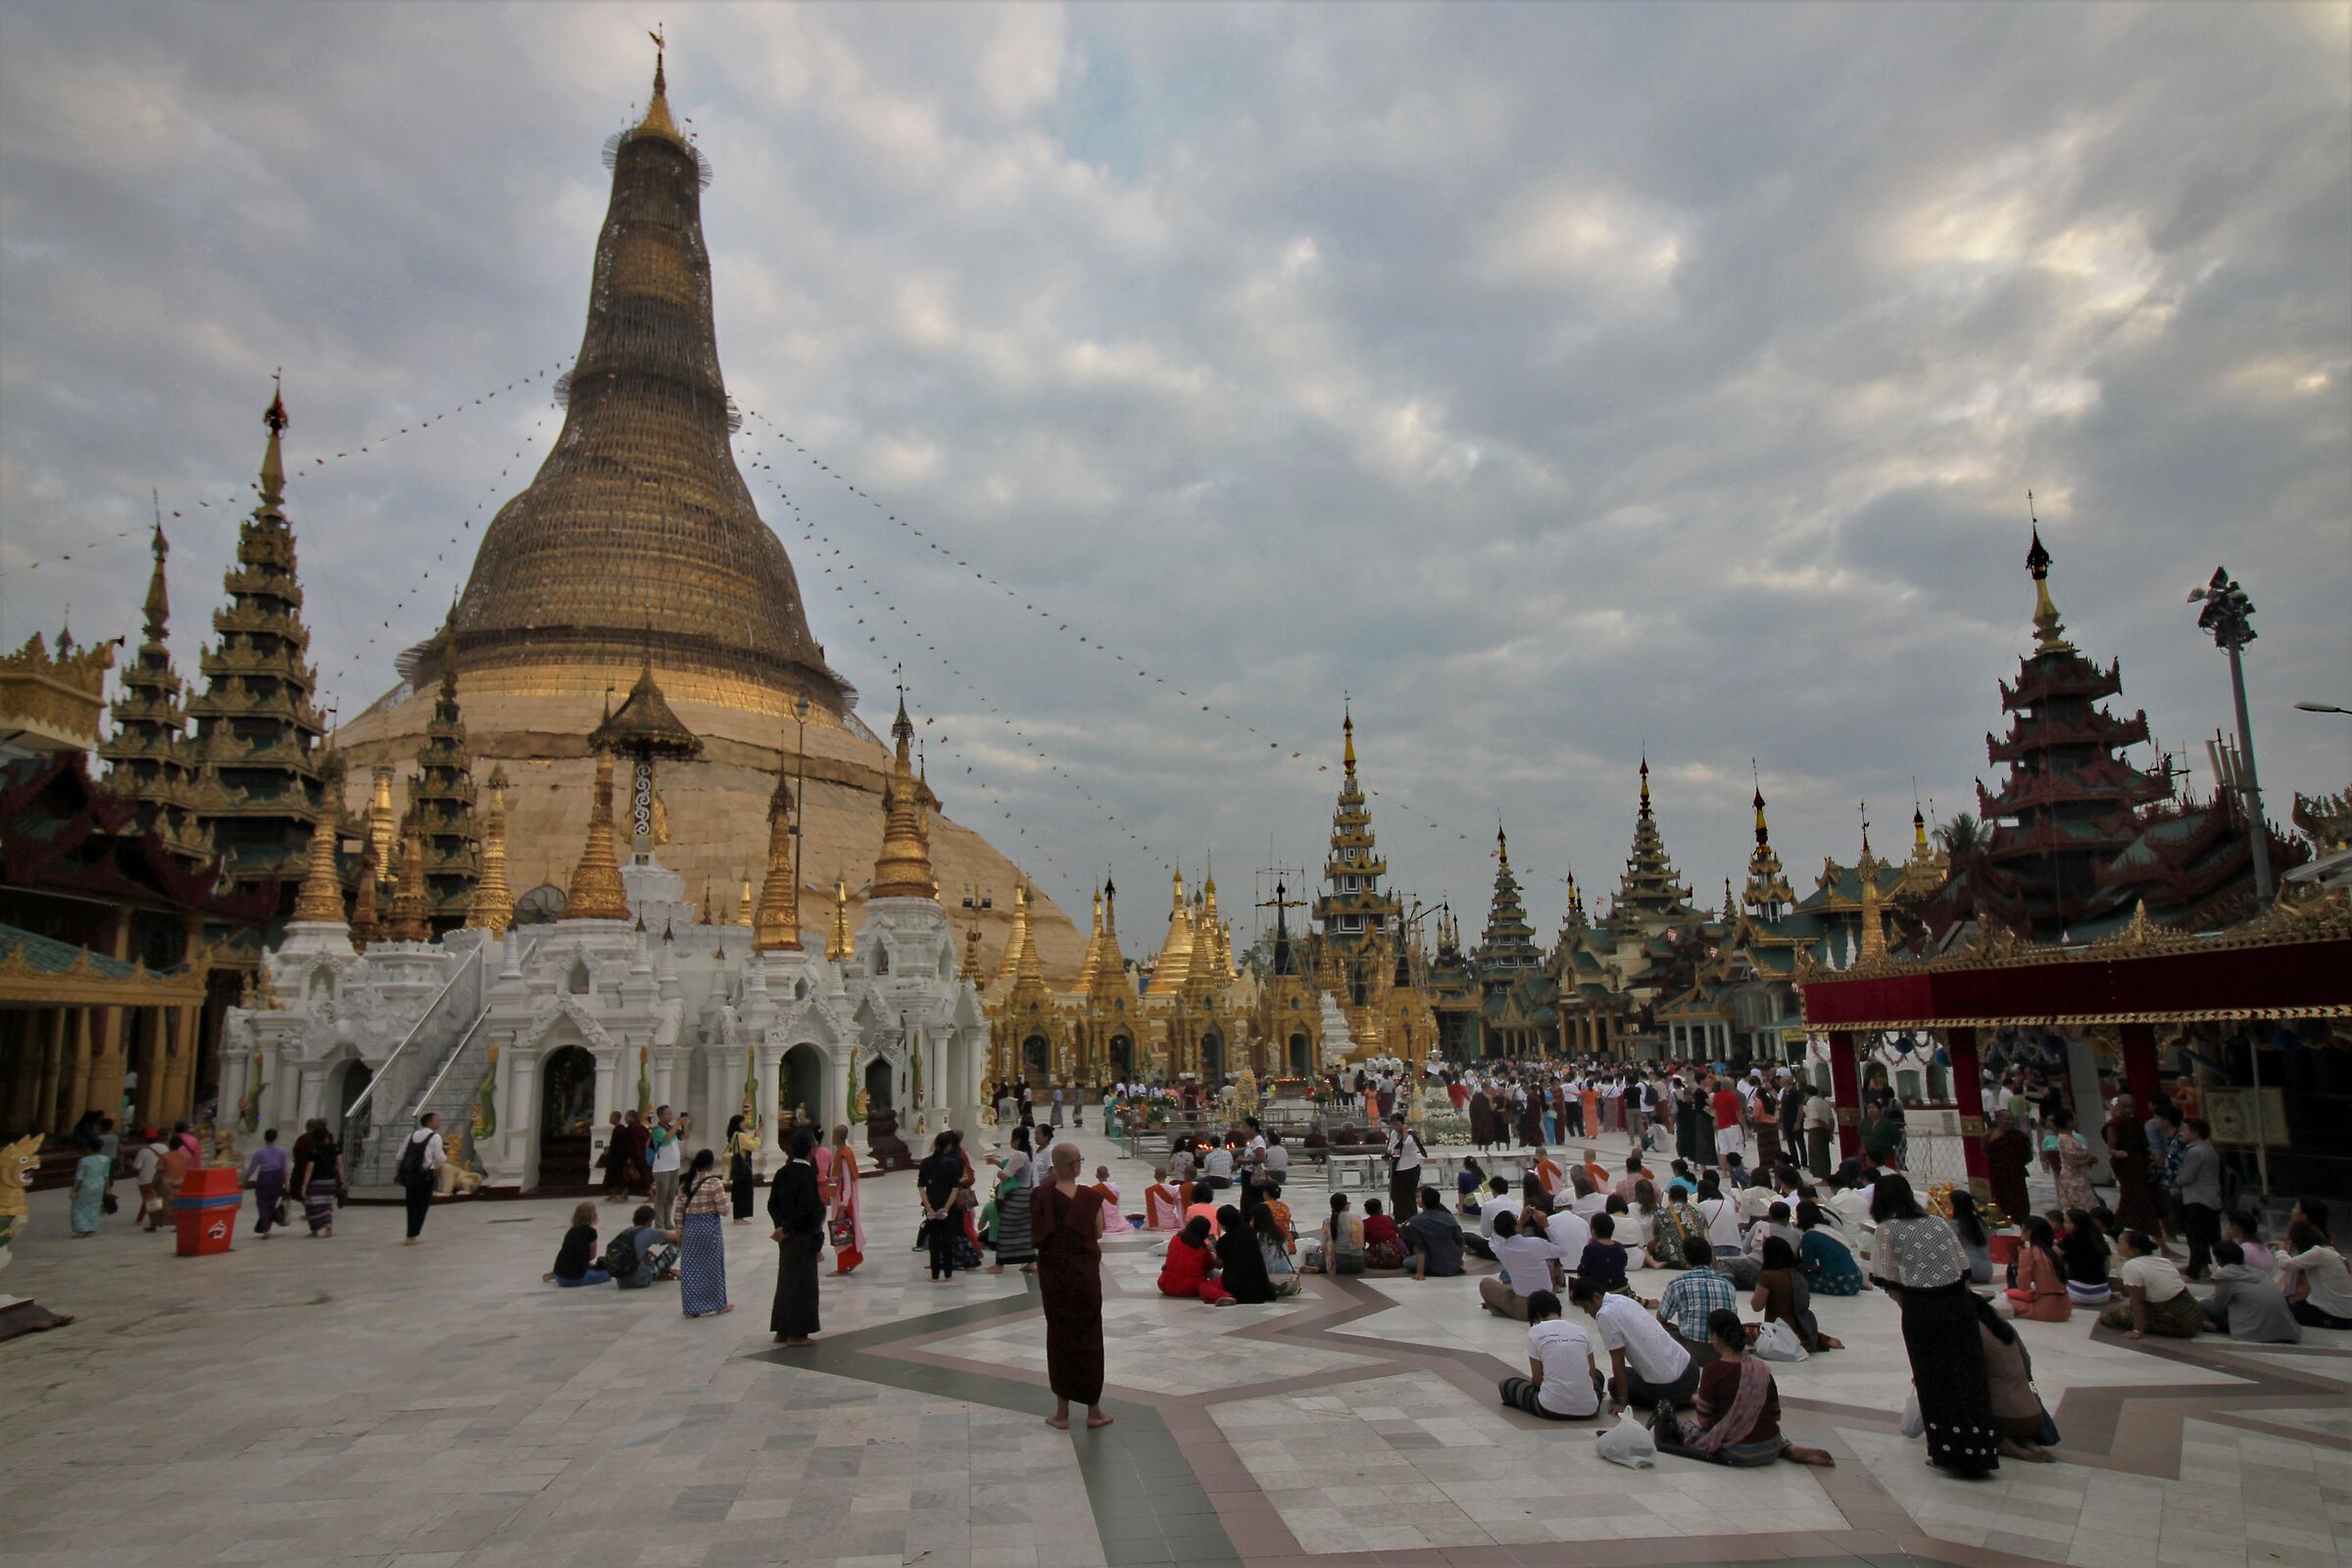 Yangon - Shwedagon Pagoda...